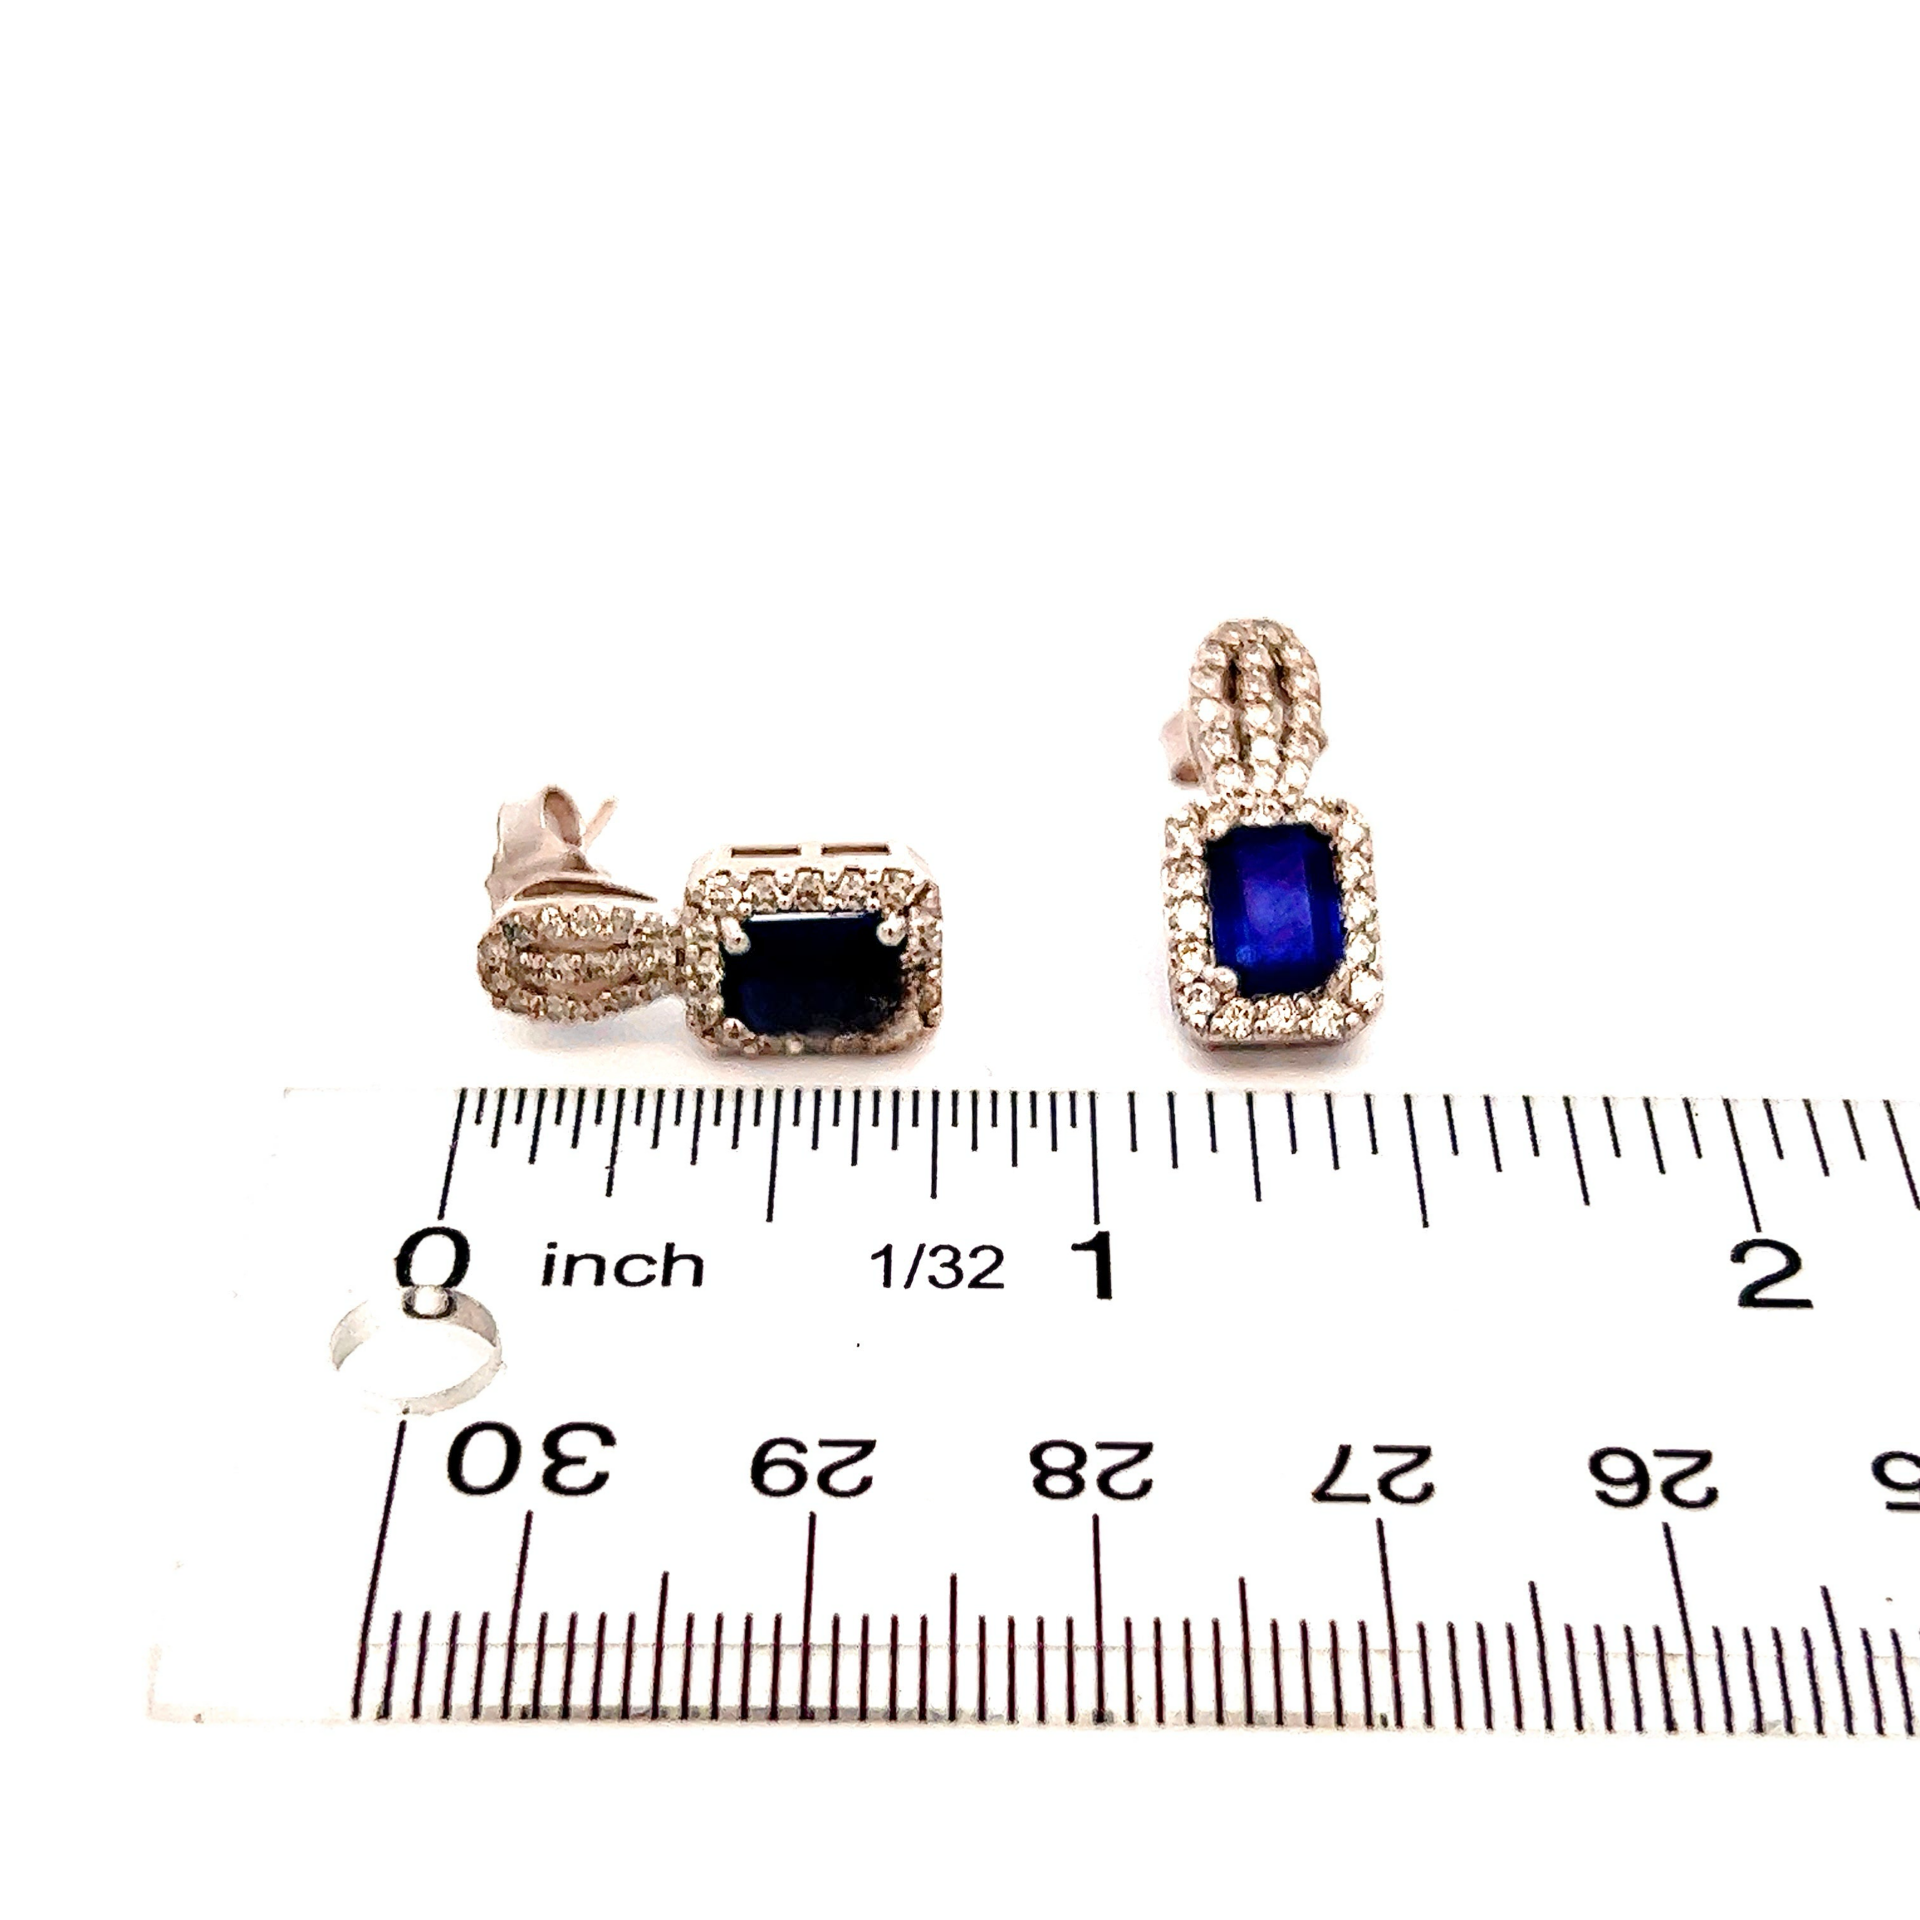 Natural Sapphire Diamond Earrings 14k W Gold 2.84 TCW Certified $6,950 215410 - Certified Fine Jewelry